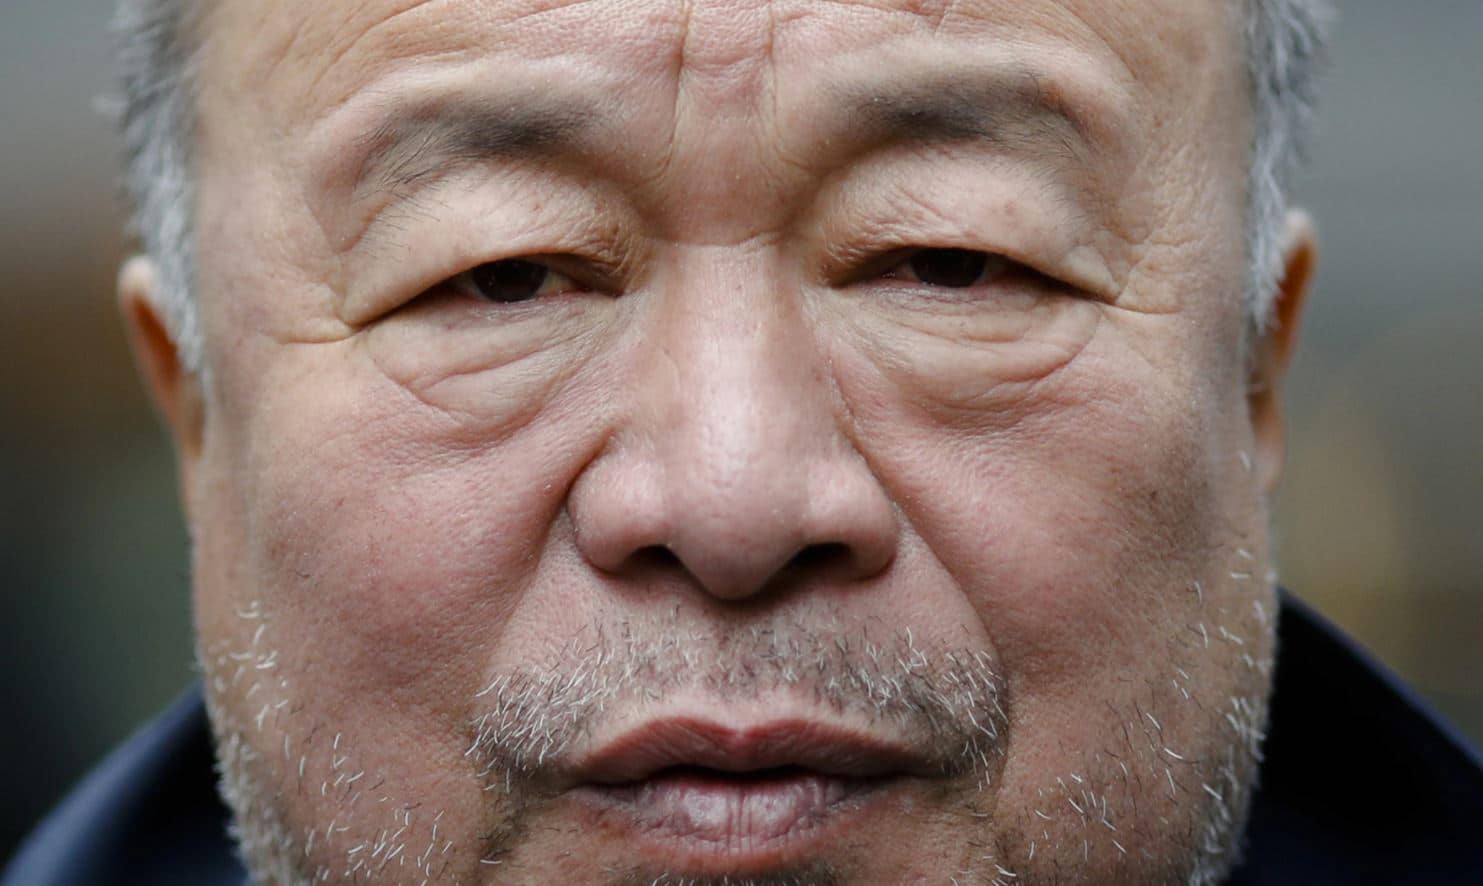 INFORME: China presiona a grandes bancos y museos europeos para atacar al reconocido artista crítico Ai Weiwei